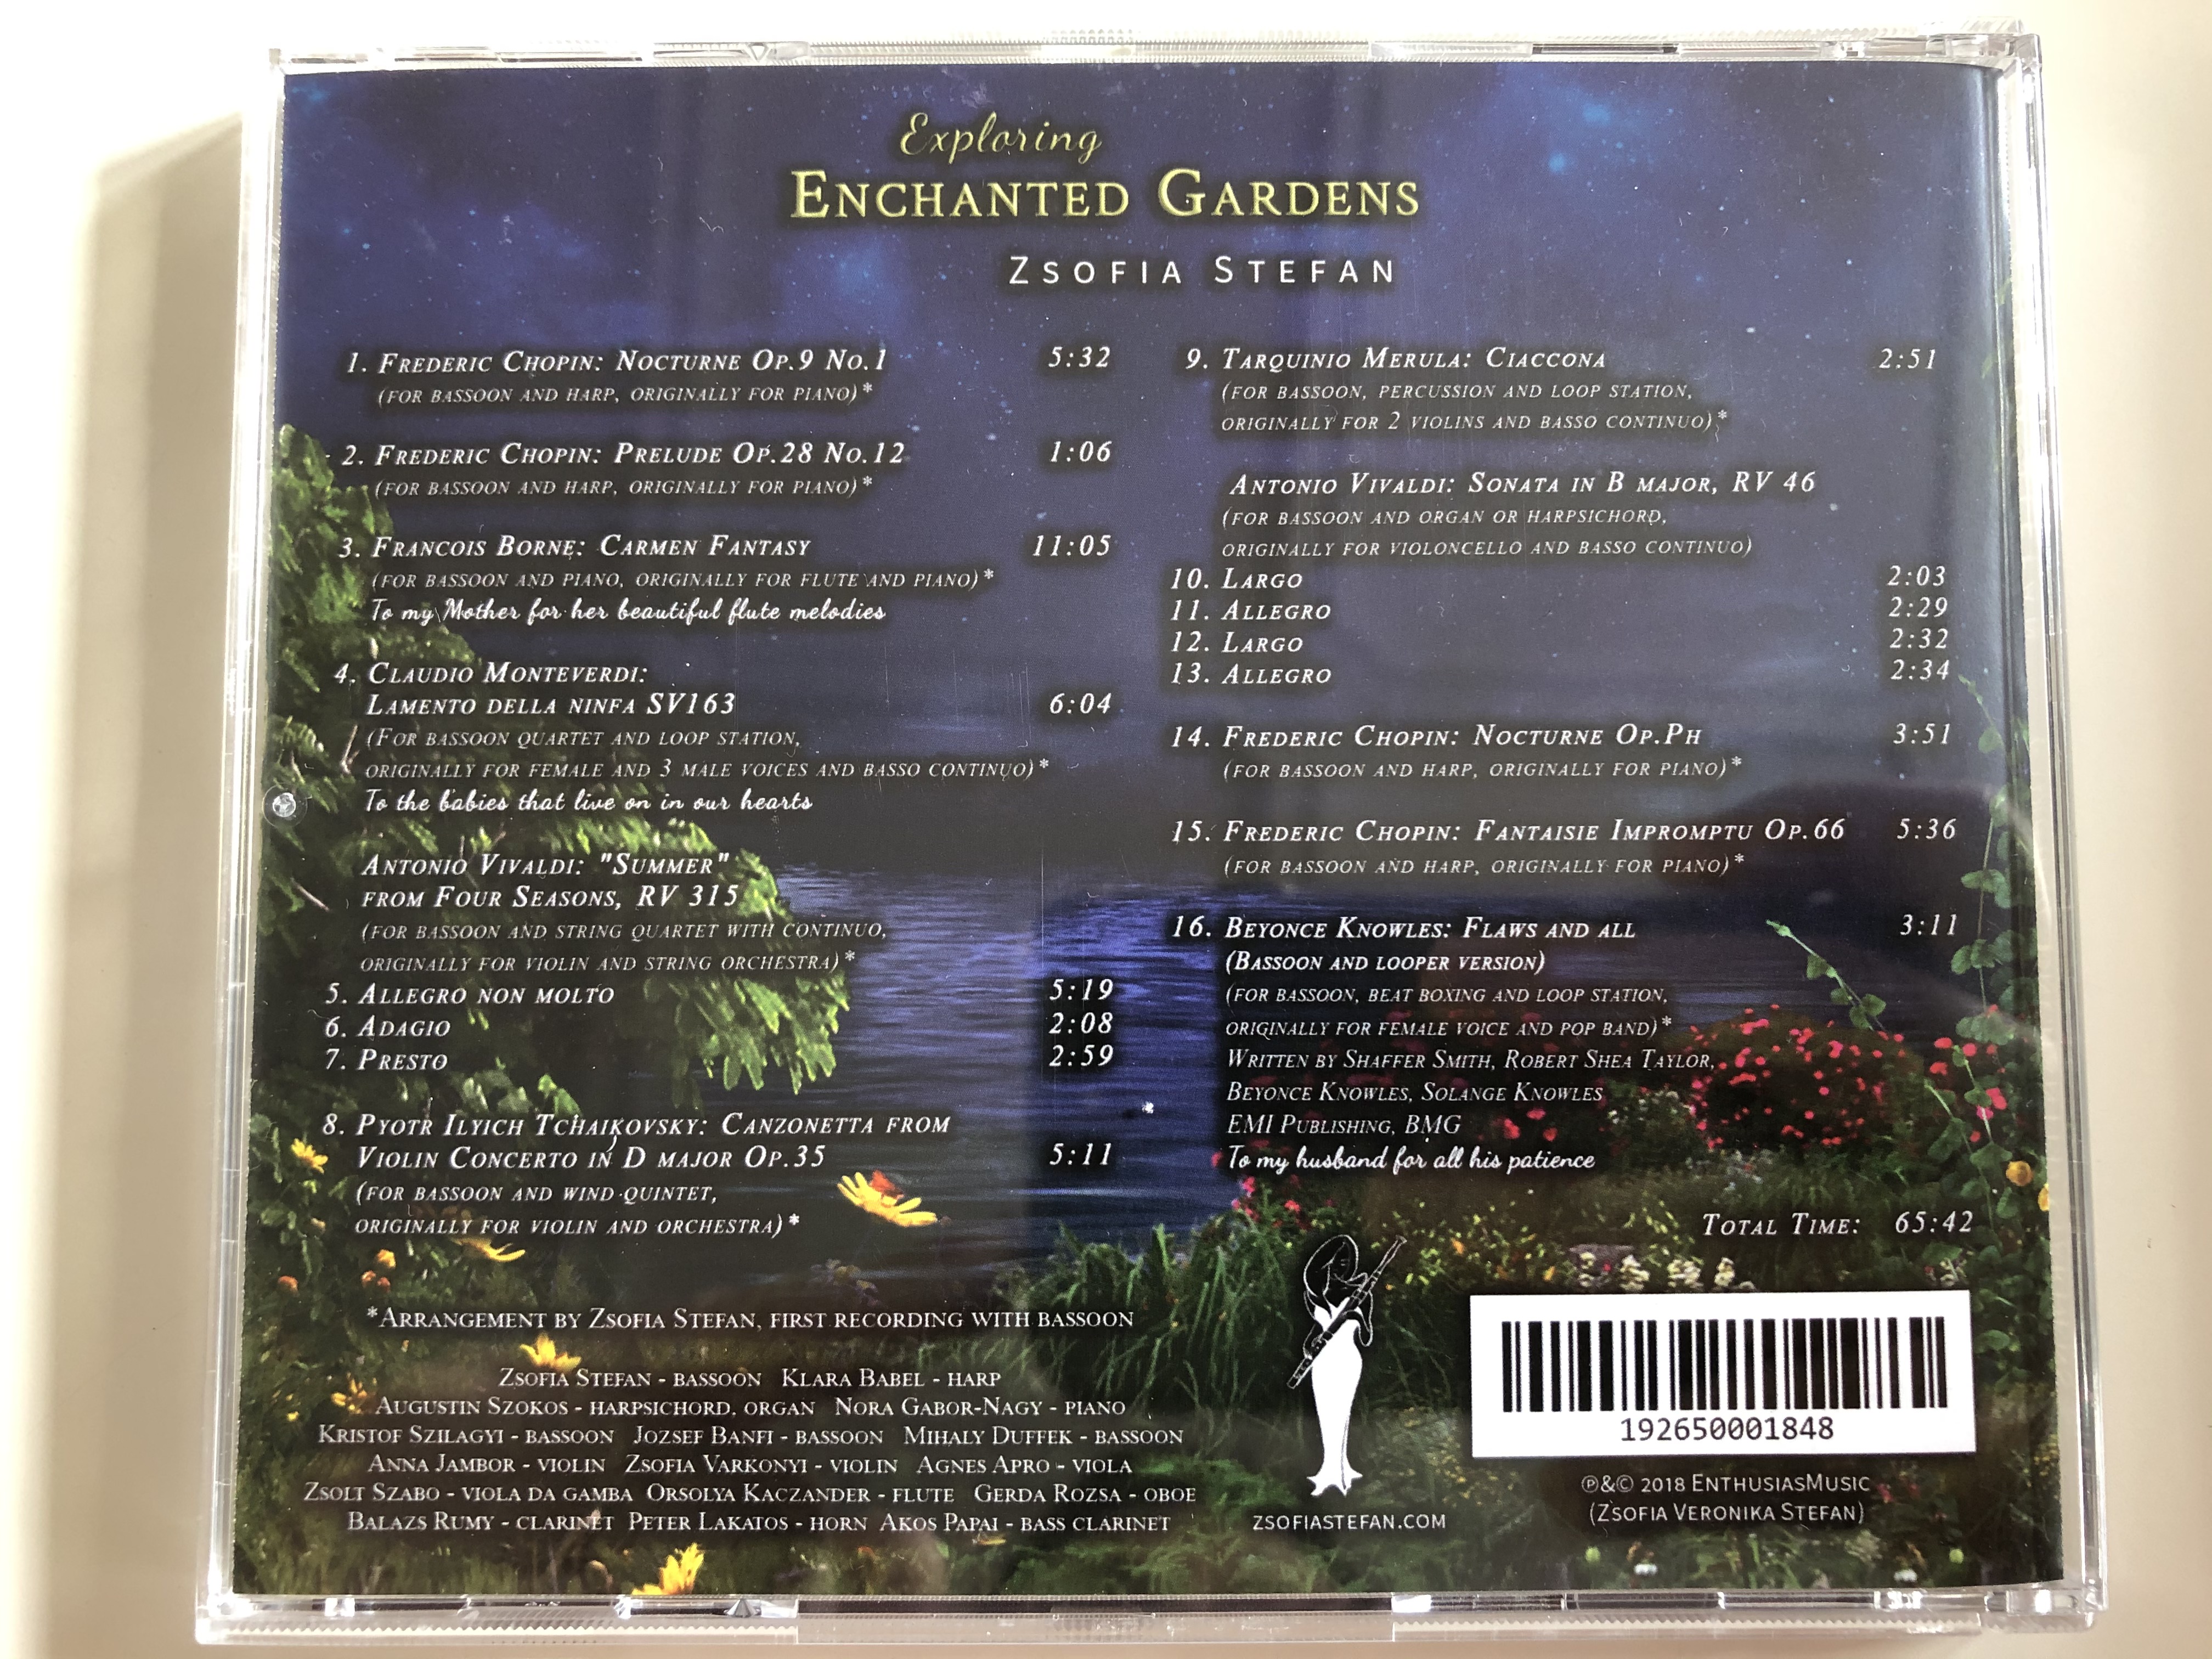 exploring-enchanted-gardens-zsofia-stefan-enthusiasmusic-audio-cd-2018-192650001848-9-.jpg